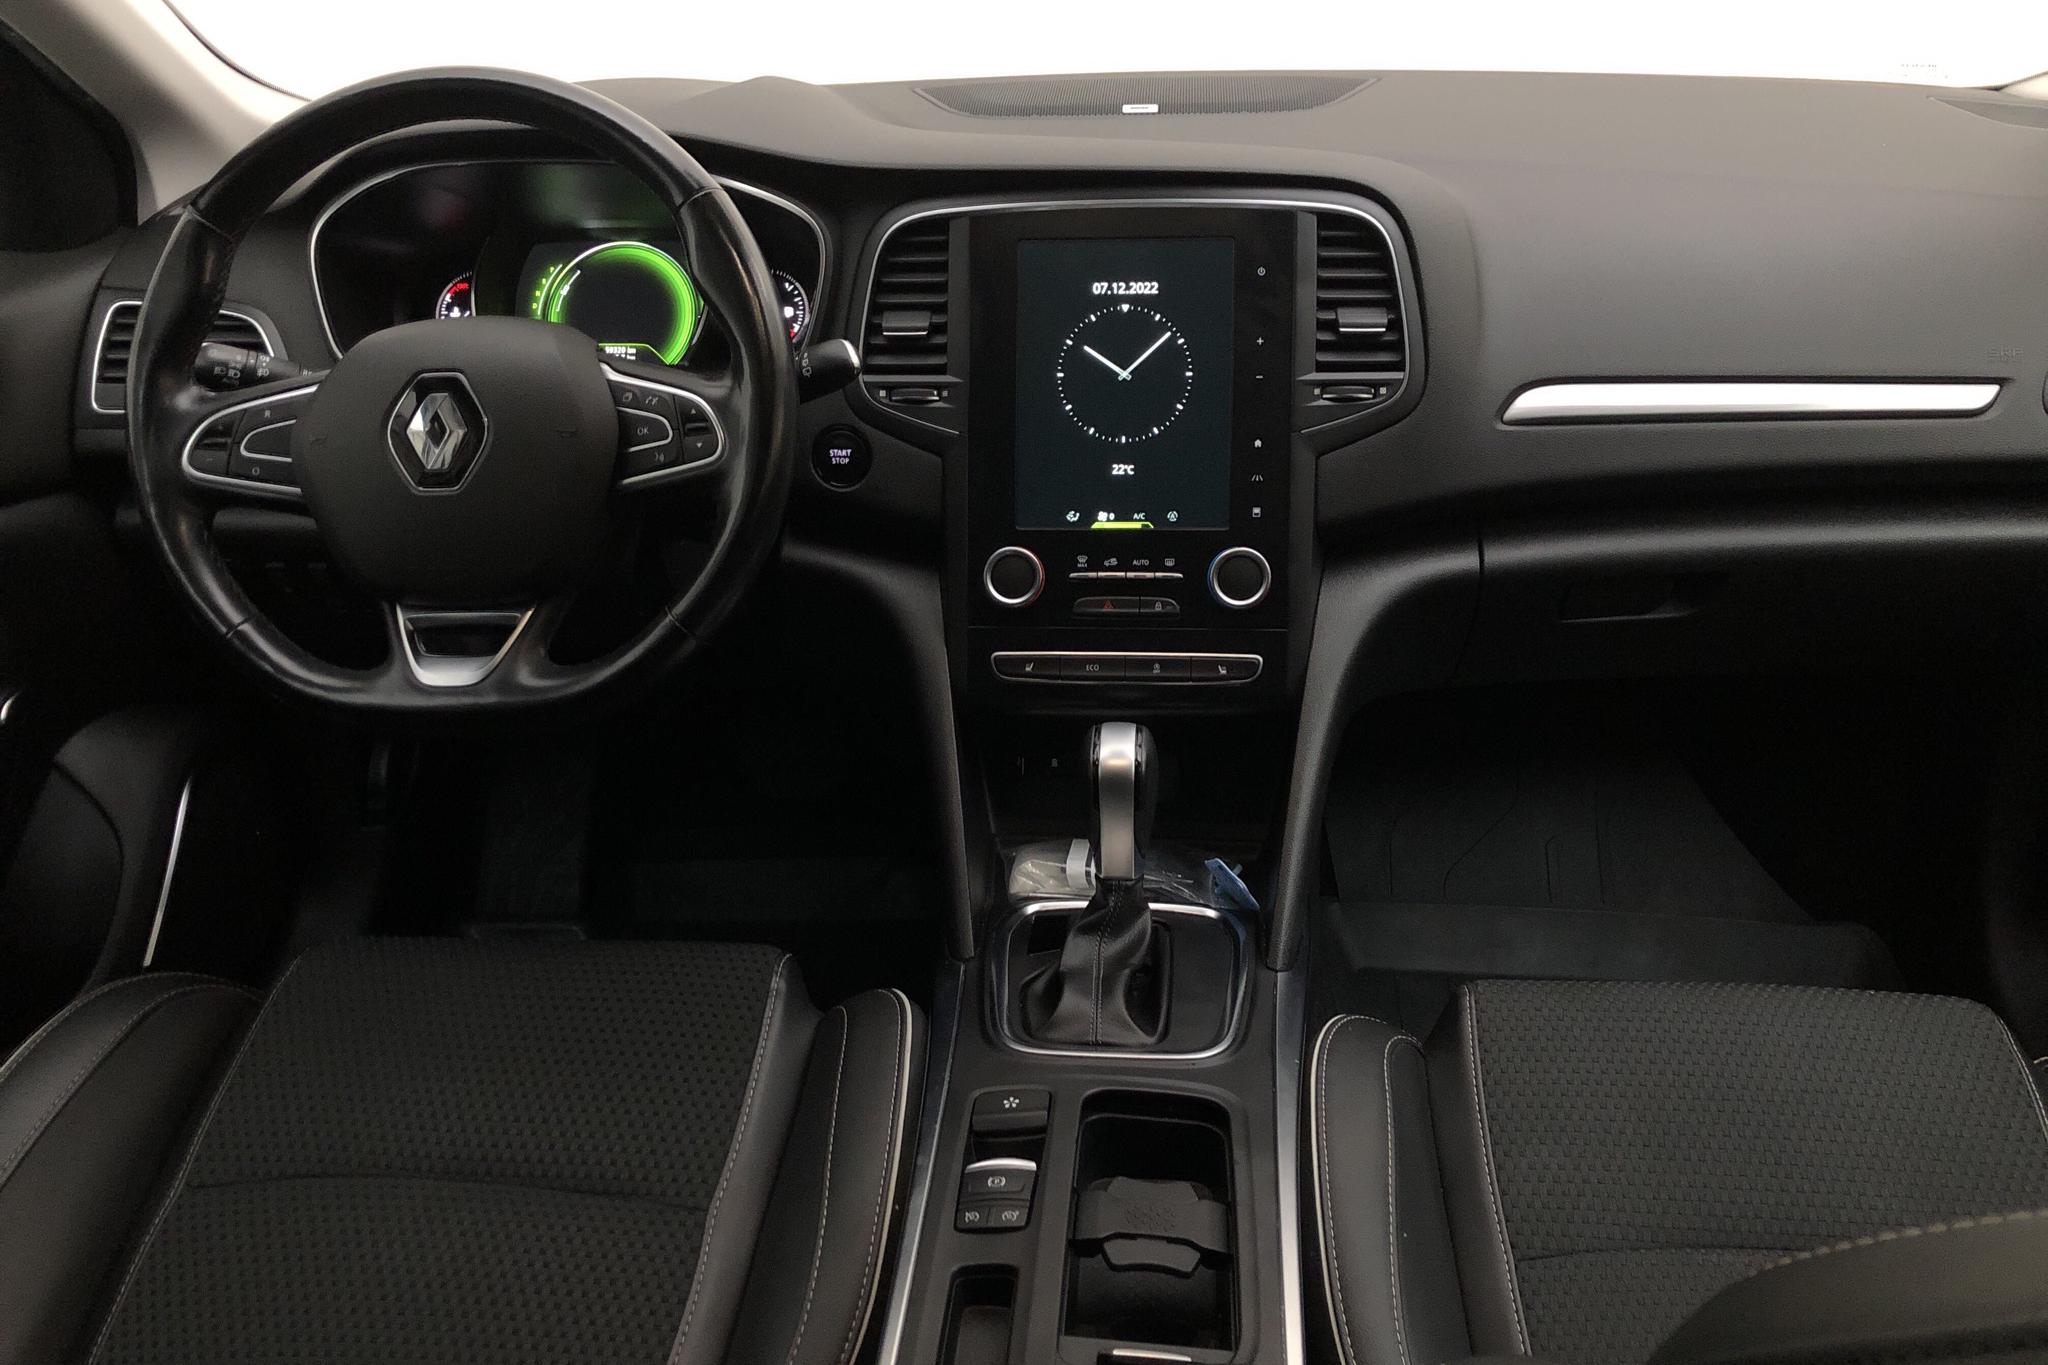 Renault Mégane 1.5 dCi 5dr (110hk) - 59 310 km - Automatic - black - 2017